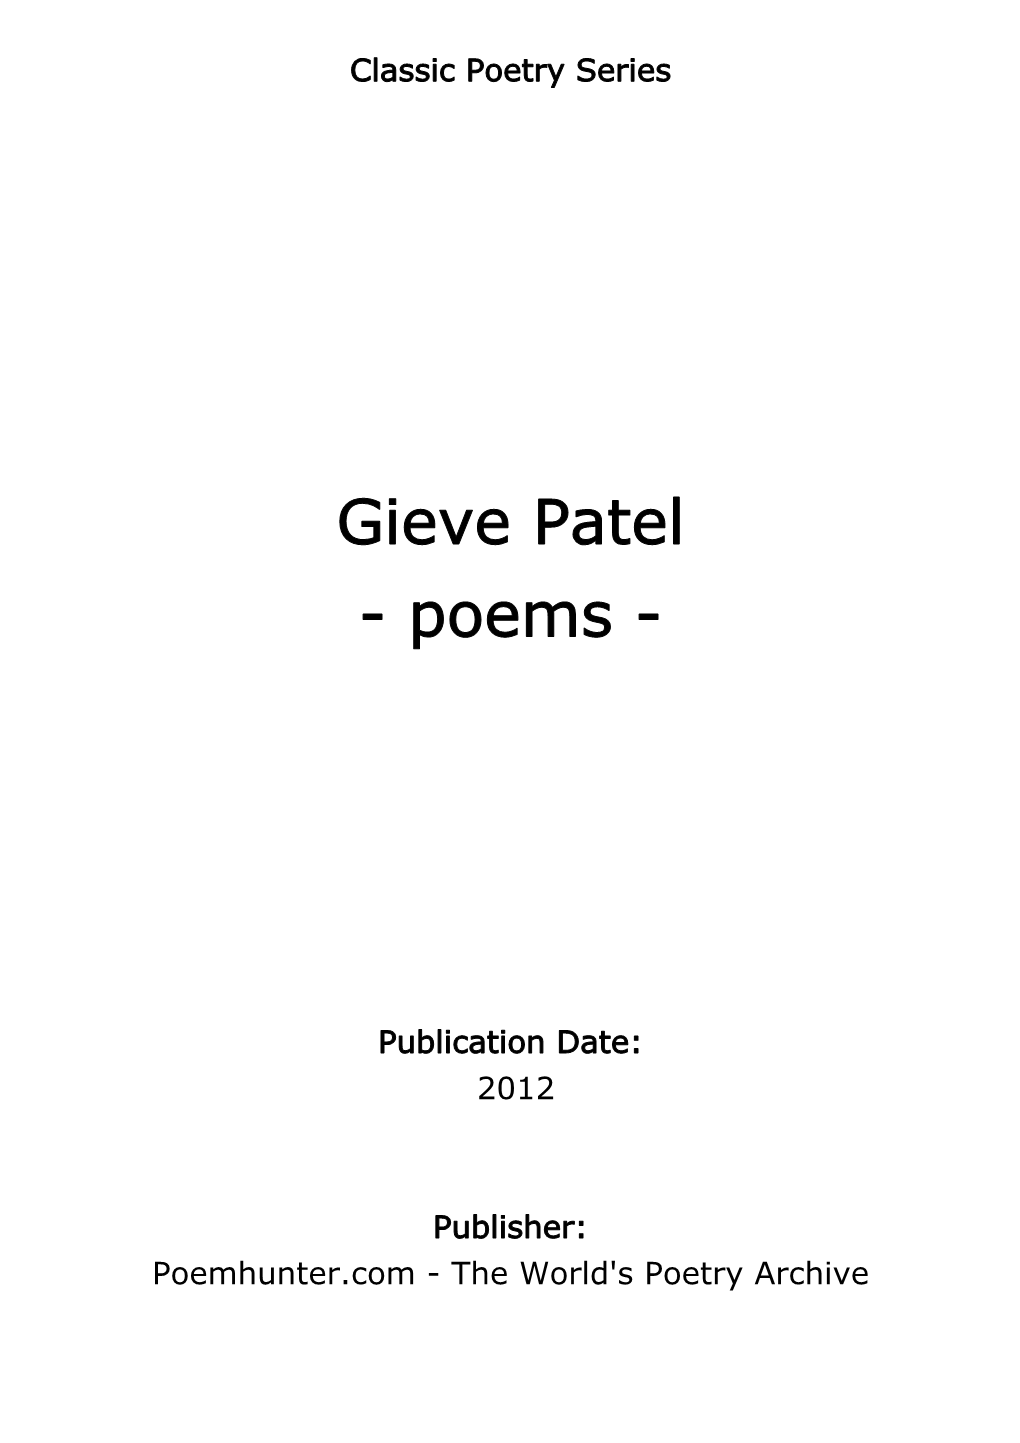 Gieve Patel - Poems